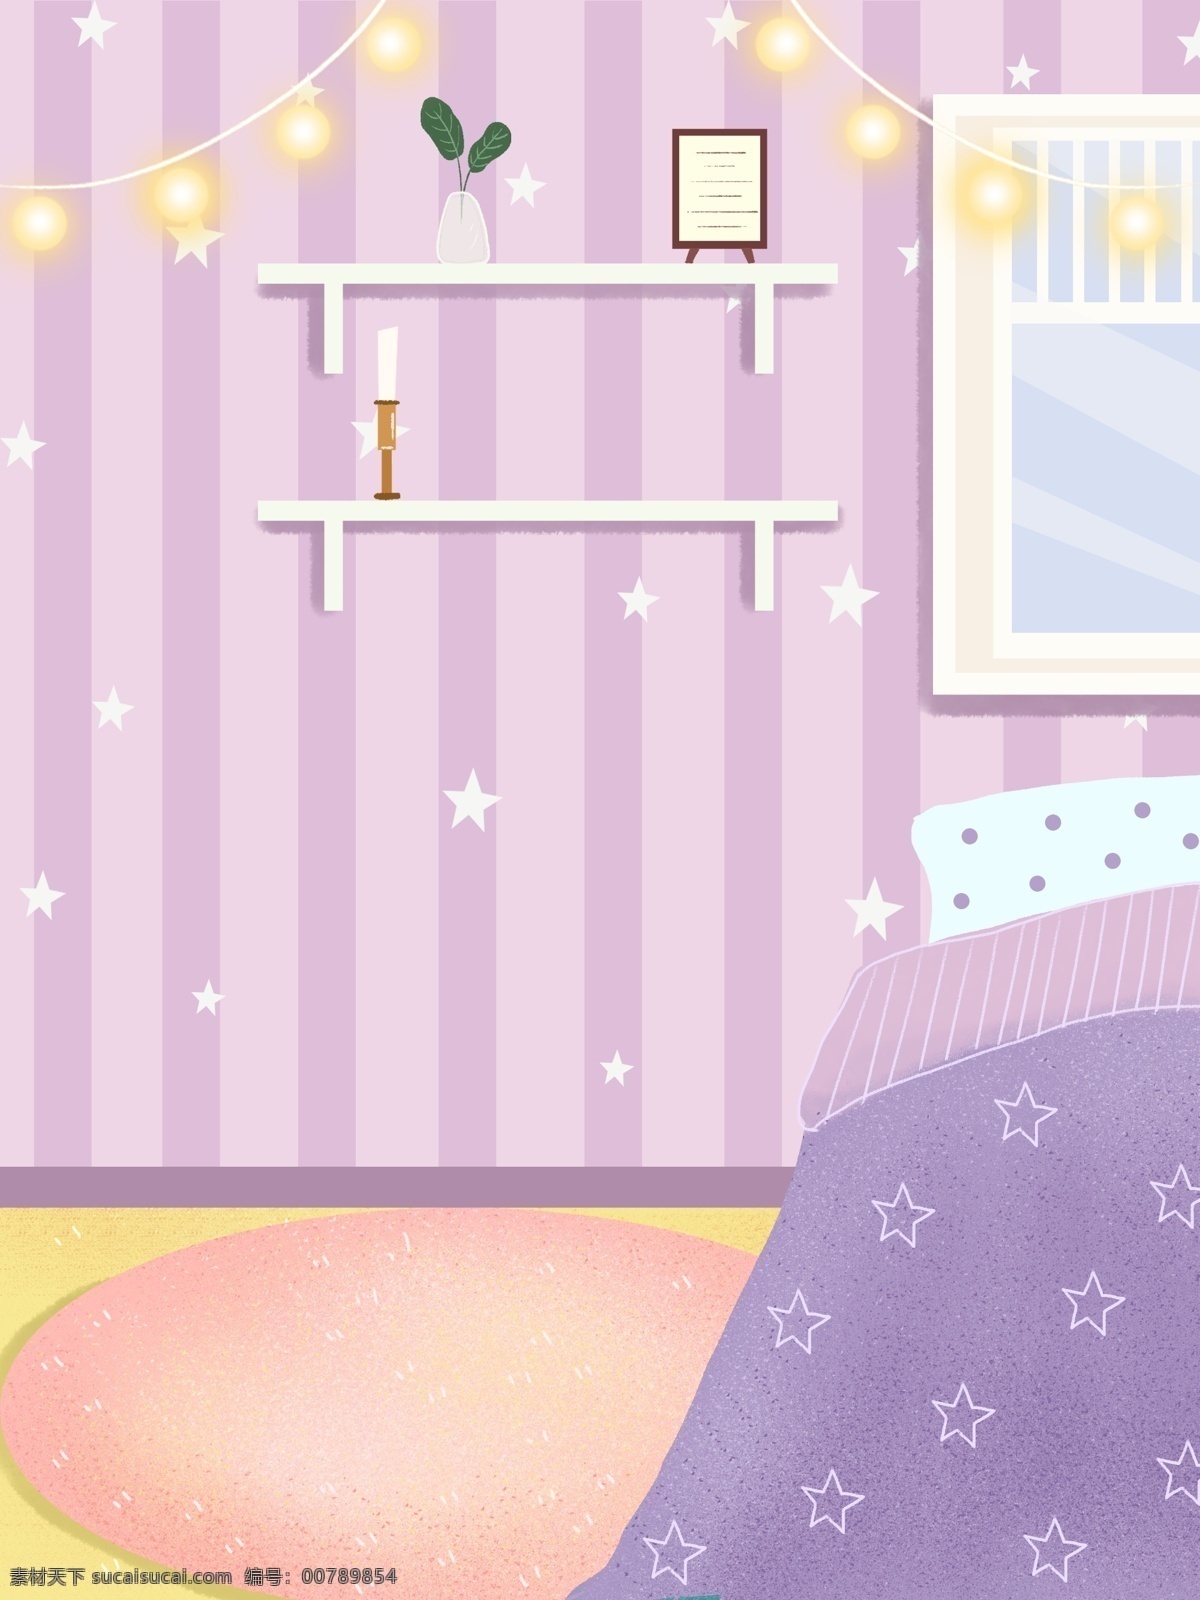 紫色 彩灯 卧室 背景 温馨 卧室背景 书架 架子 壁画 床铺 彩绘背景 特邀背景 促销背景 背景展板图 居家背景